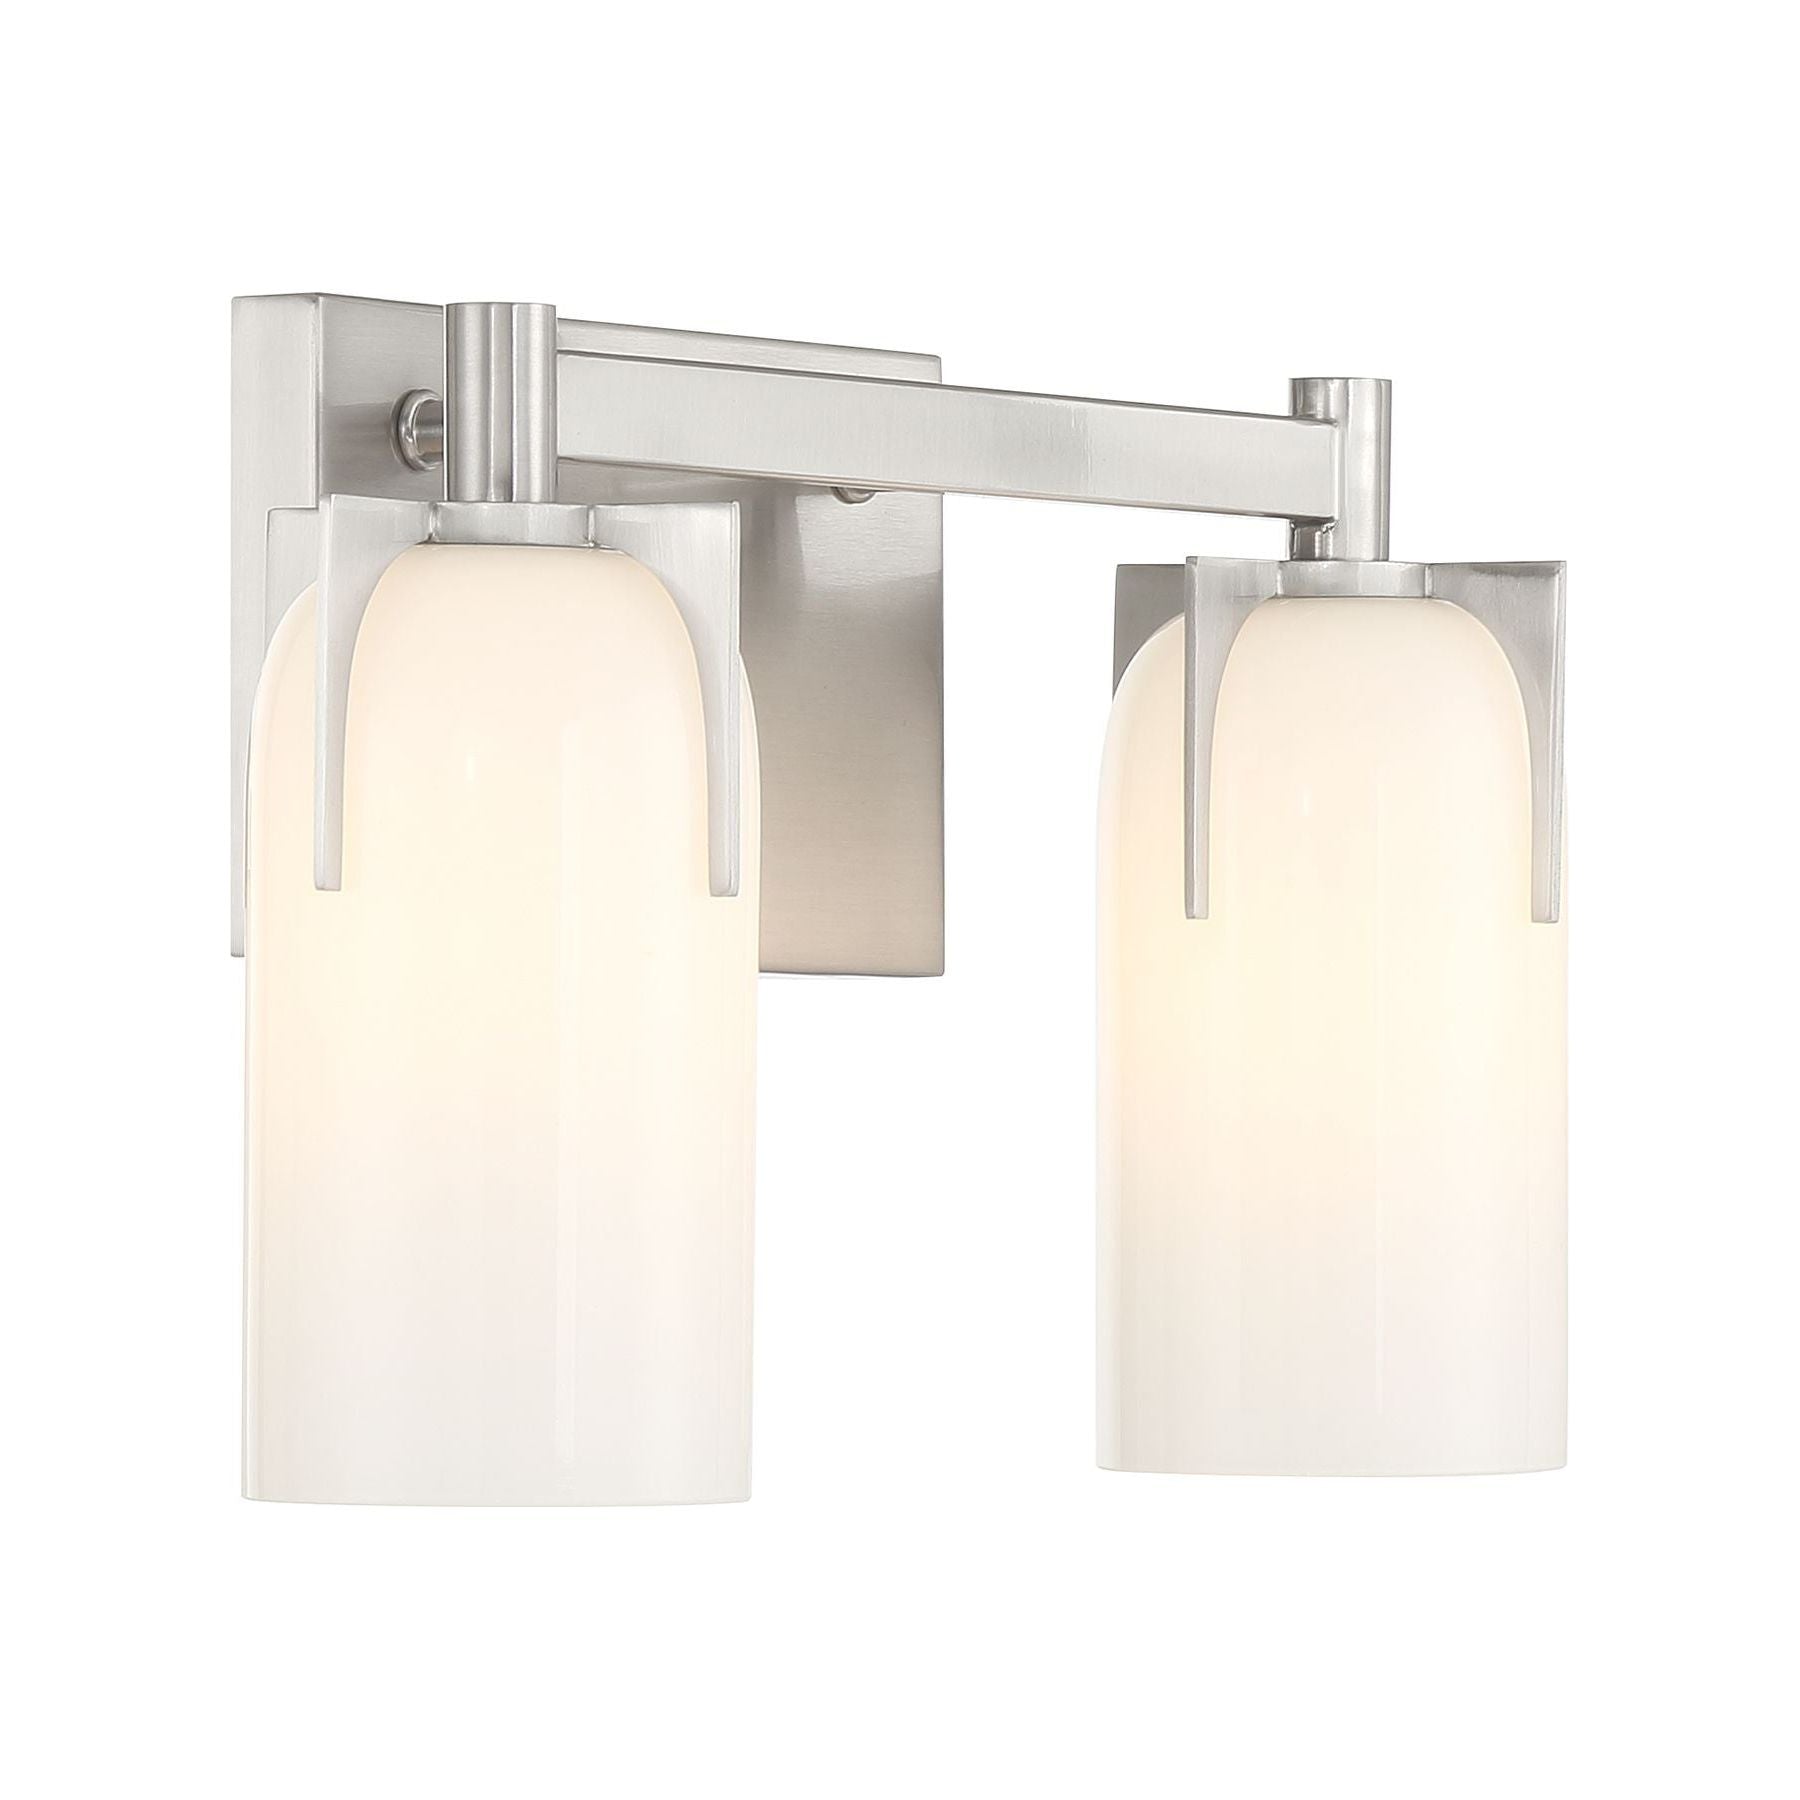 Caldwell 2-Light Bathroom Vanity Light